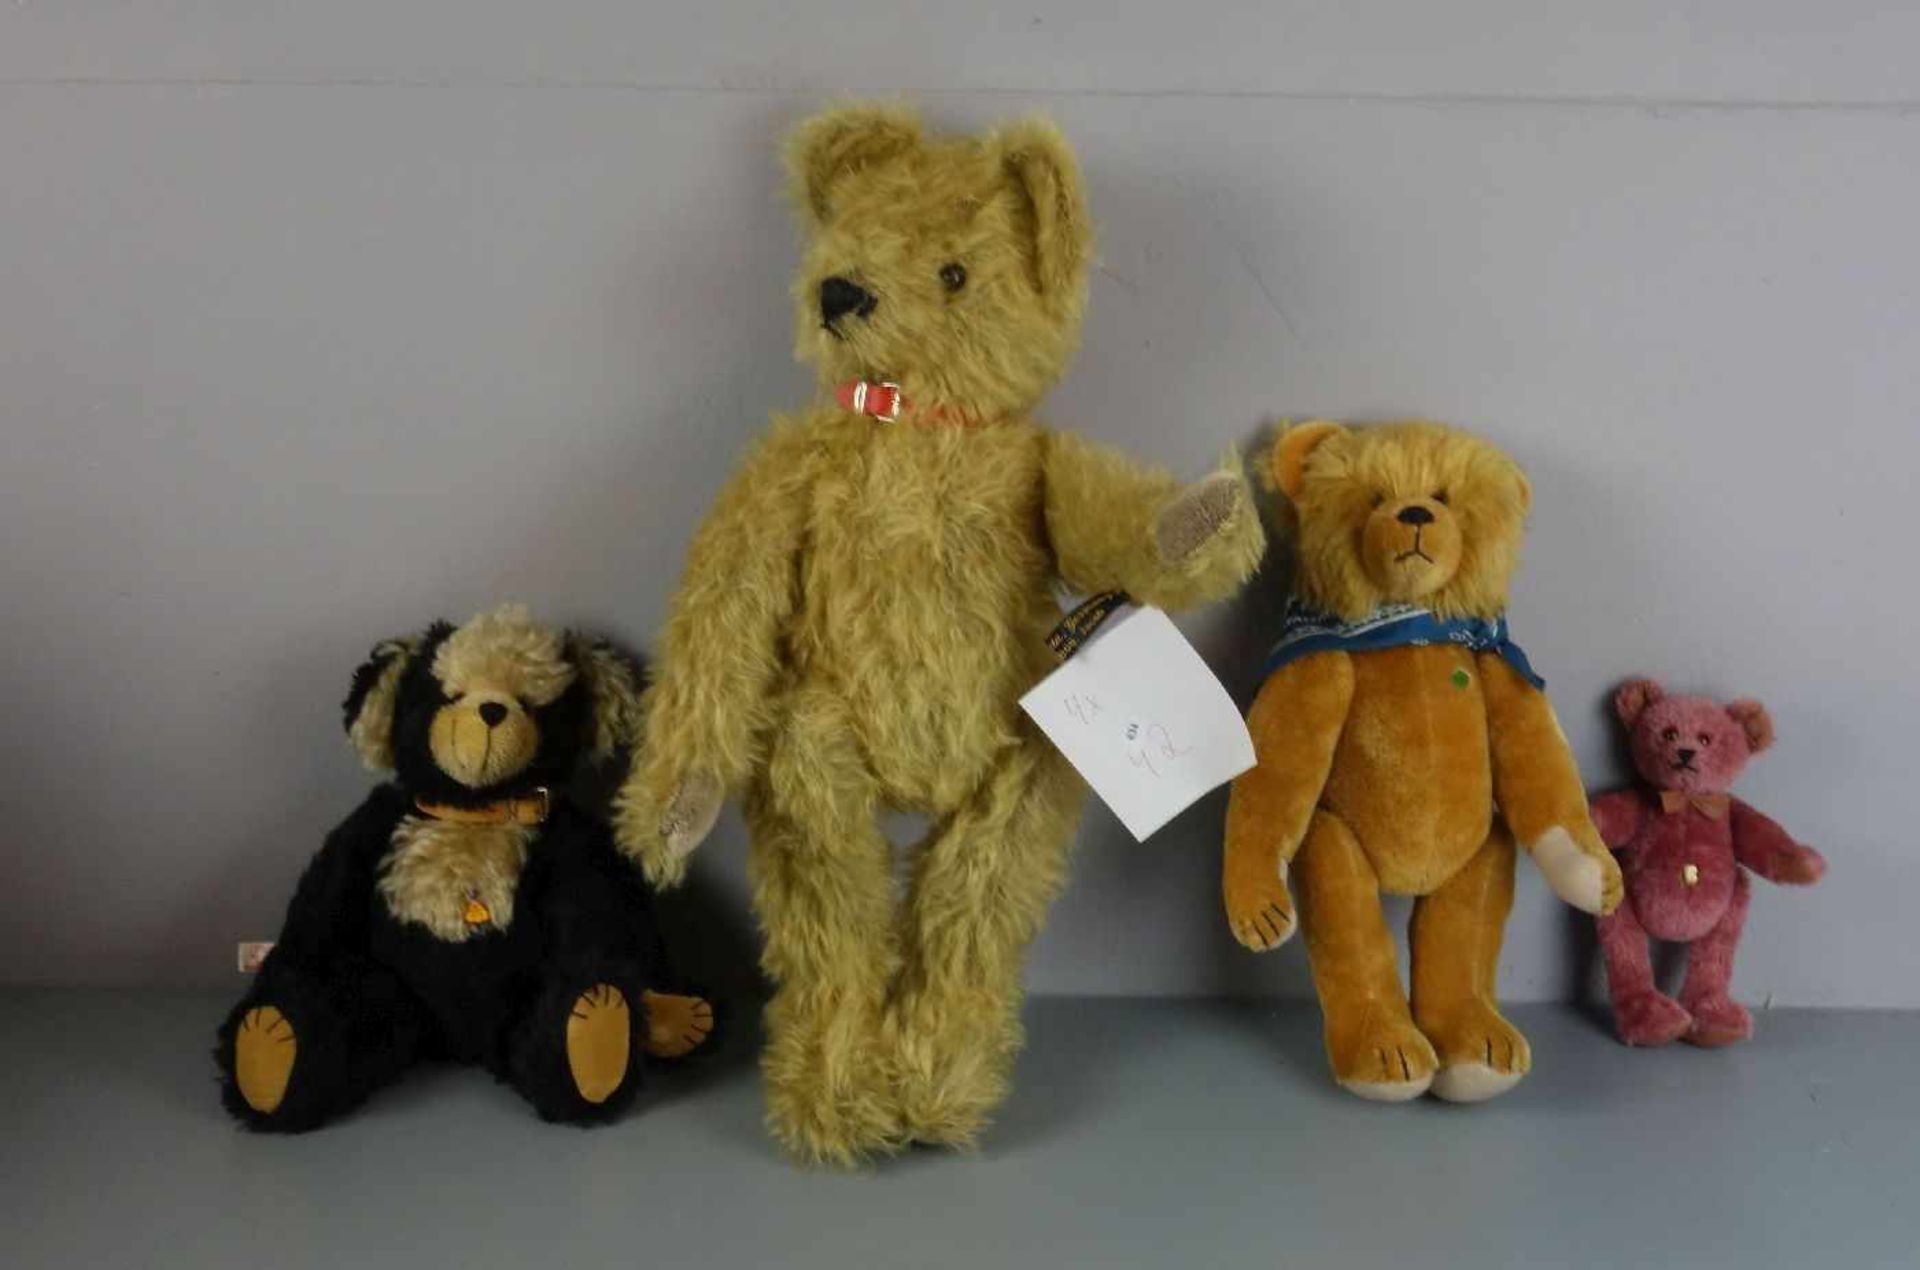 KONVOLUT PLÜSCHTIERE / KÜNSTLER-TEDDYBÄREN - 4 STÜCK / four teddy bears. Unterschiedliche Größen und